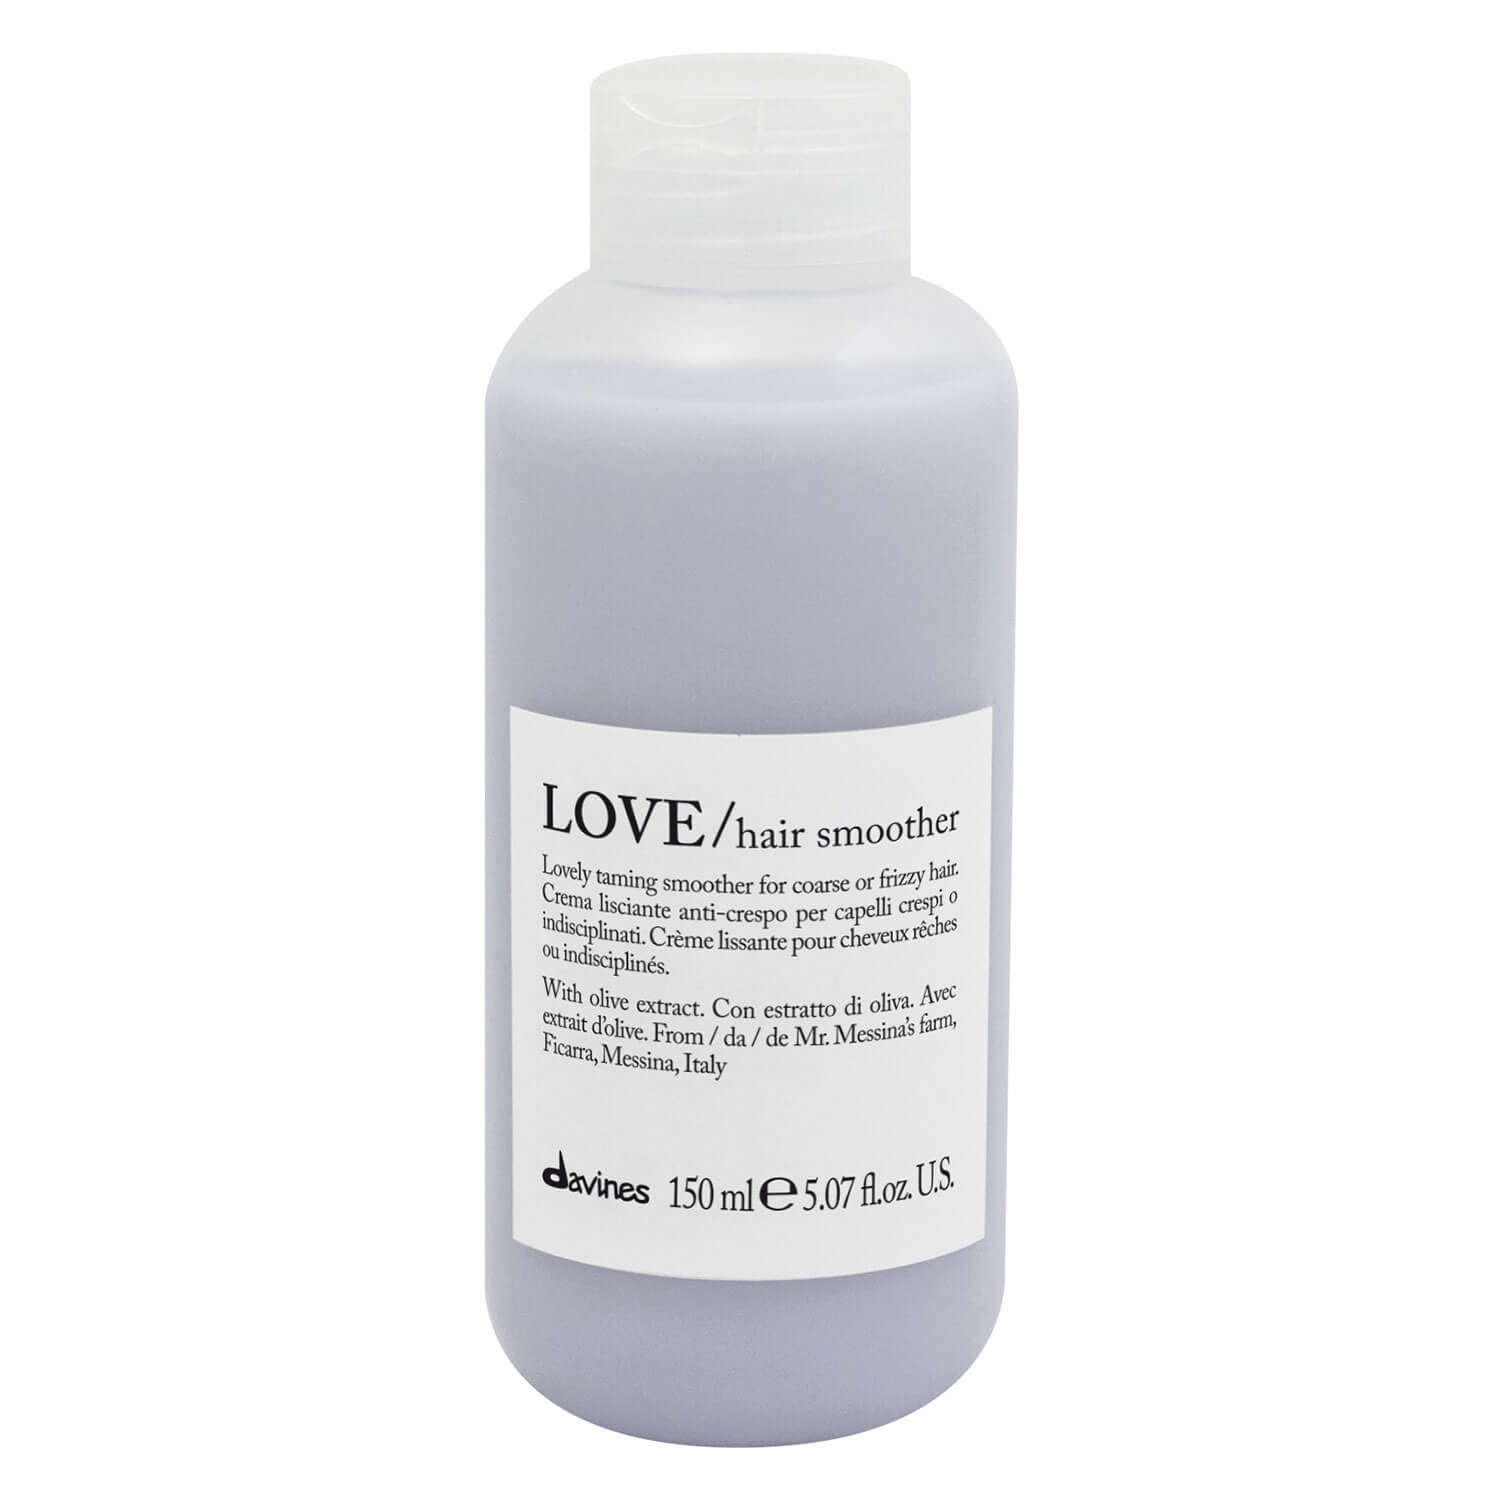 Produktbild von Essential Haircare - LOVE Hair Smoother